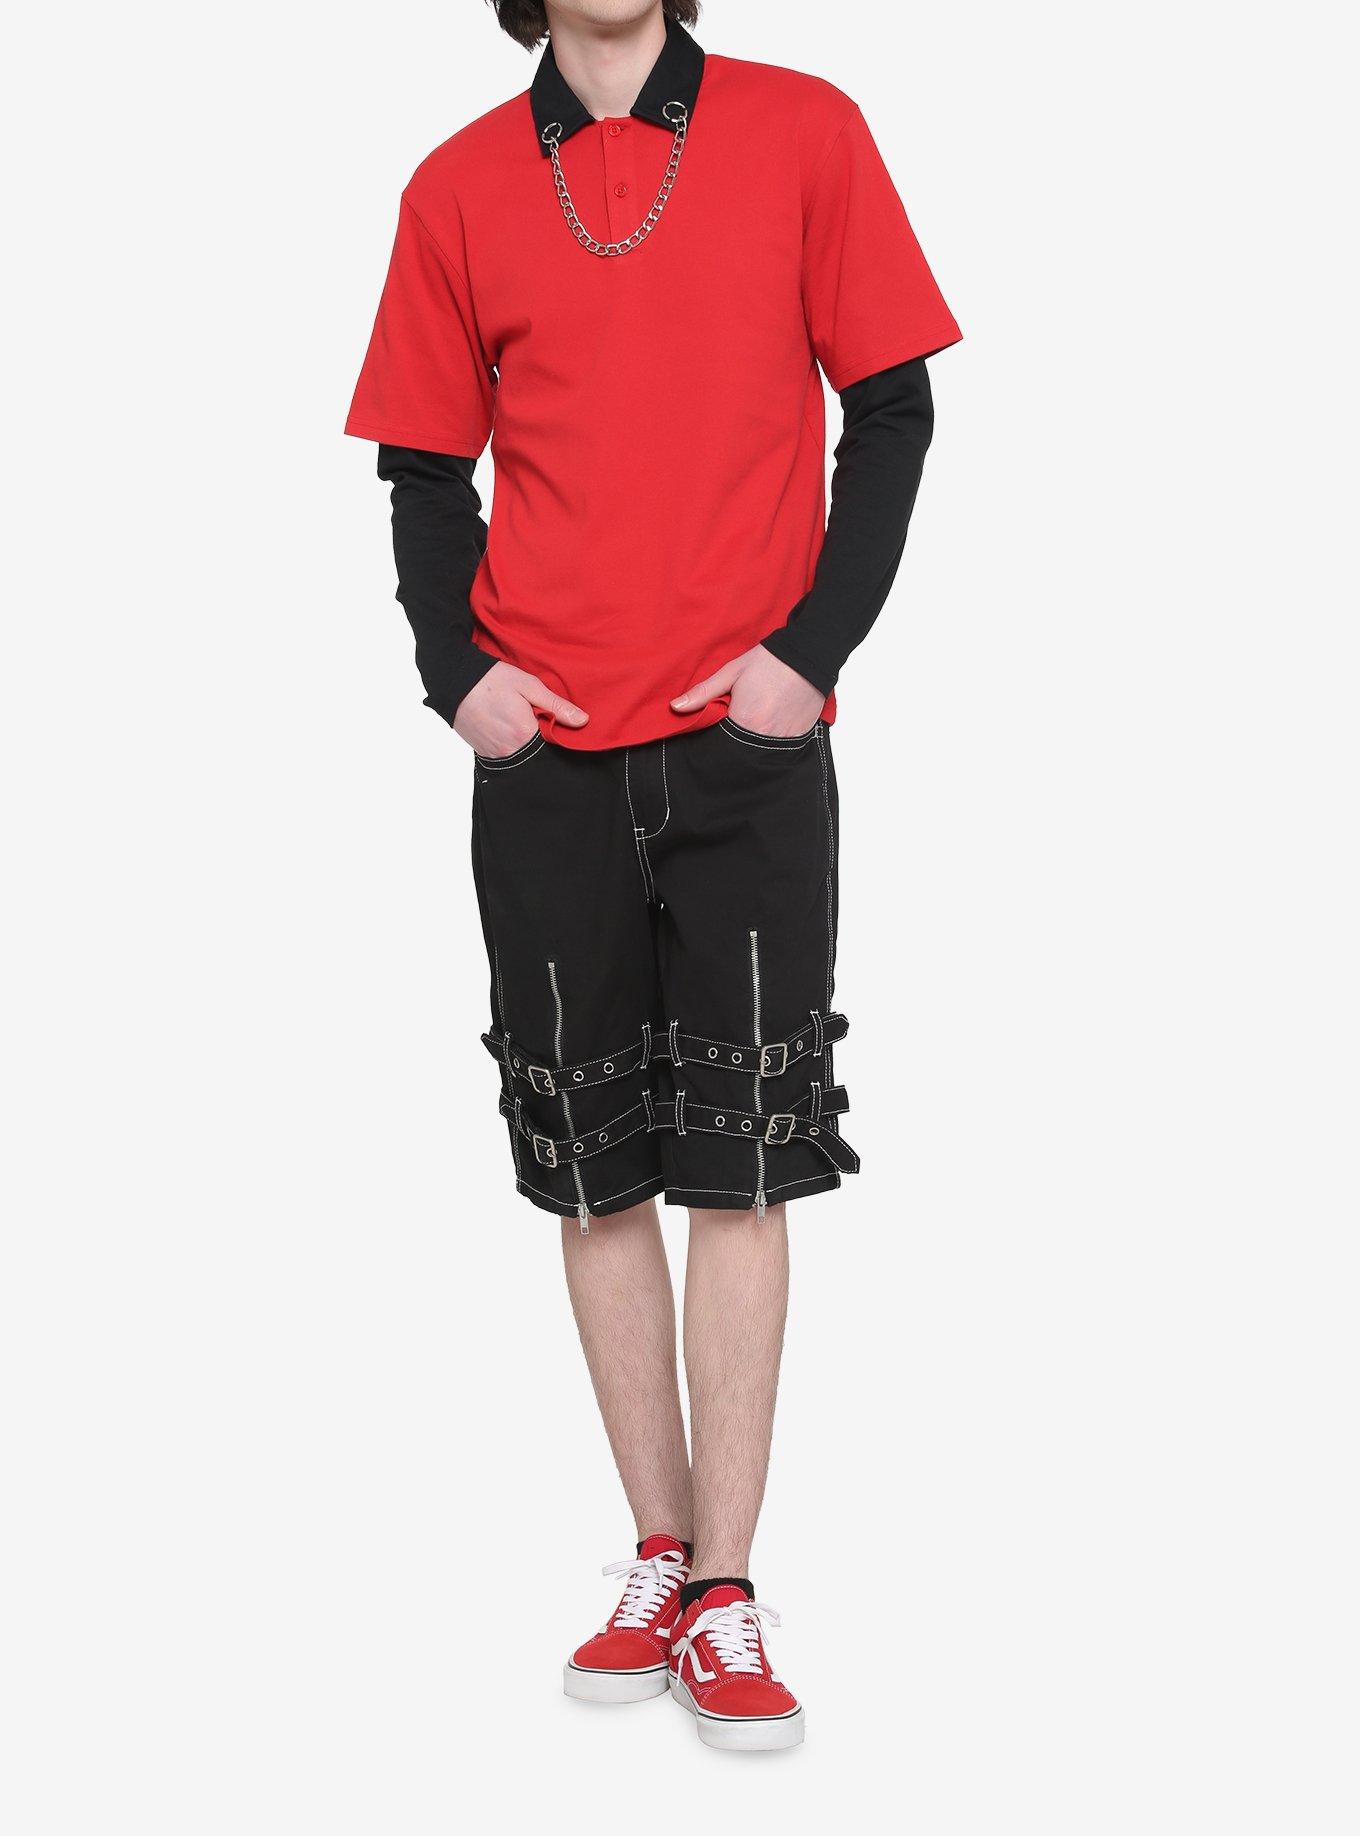 Red & Black Chain Collar Twofer Long-Sleeve Shirt, BLACK  RED, alternate